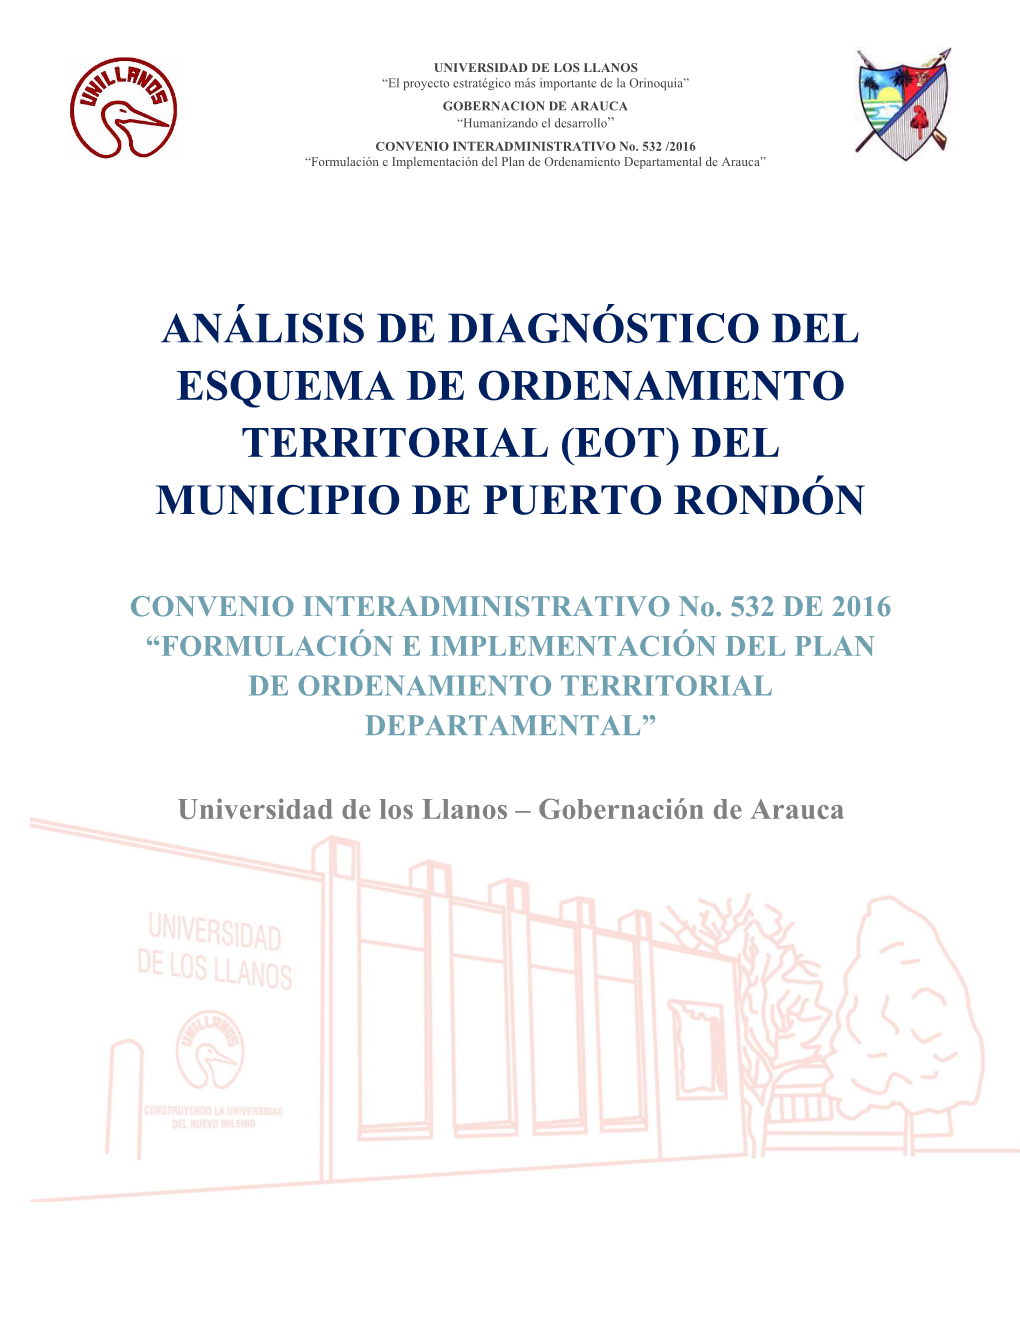 4.1 Analisis De Diagnosticos Eot Puerto Rondón